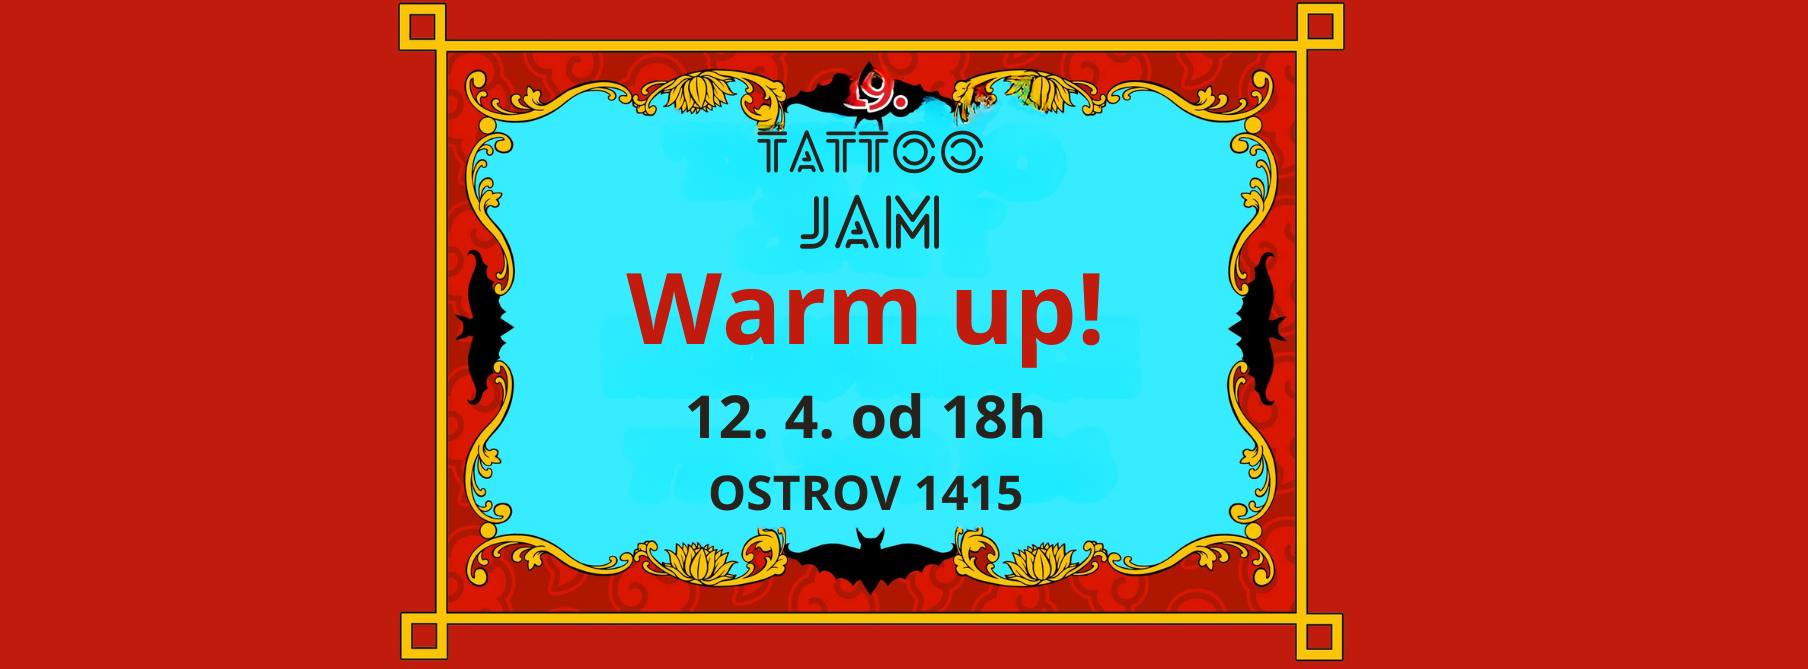 Tattoo Jam Warm up